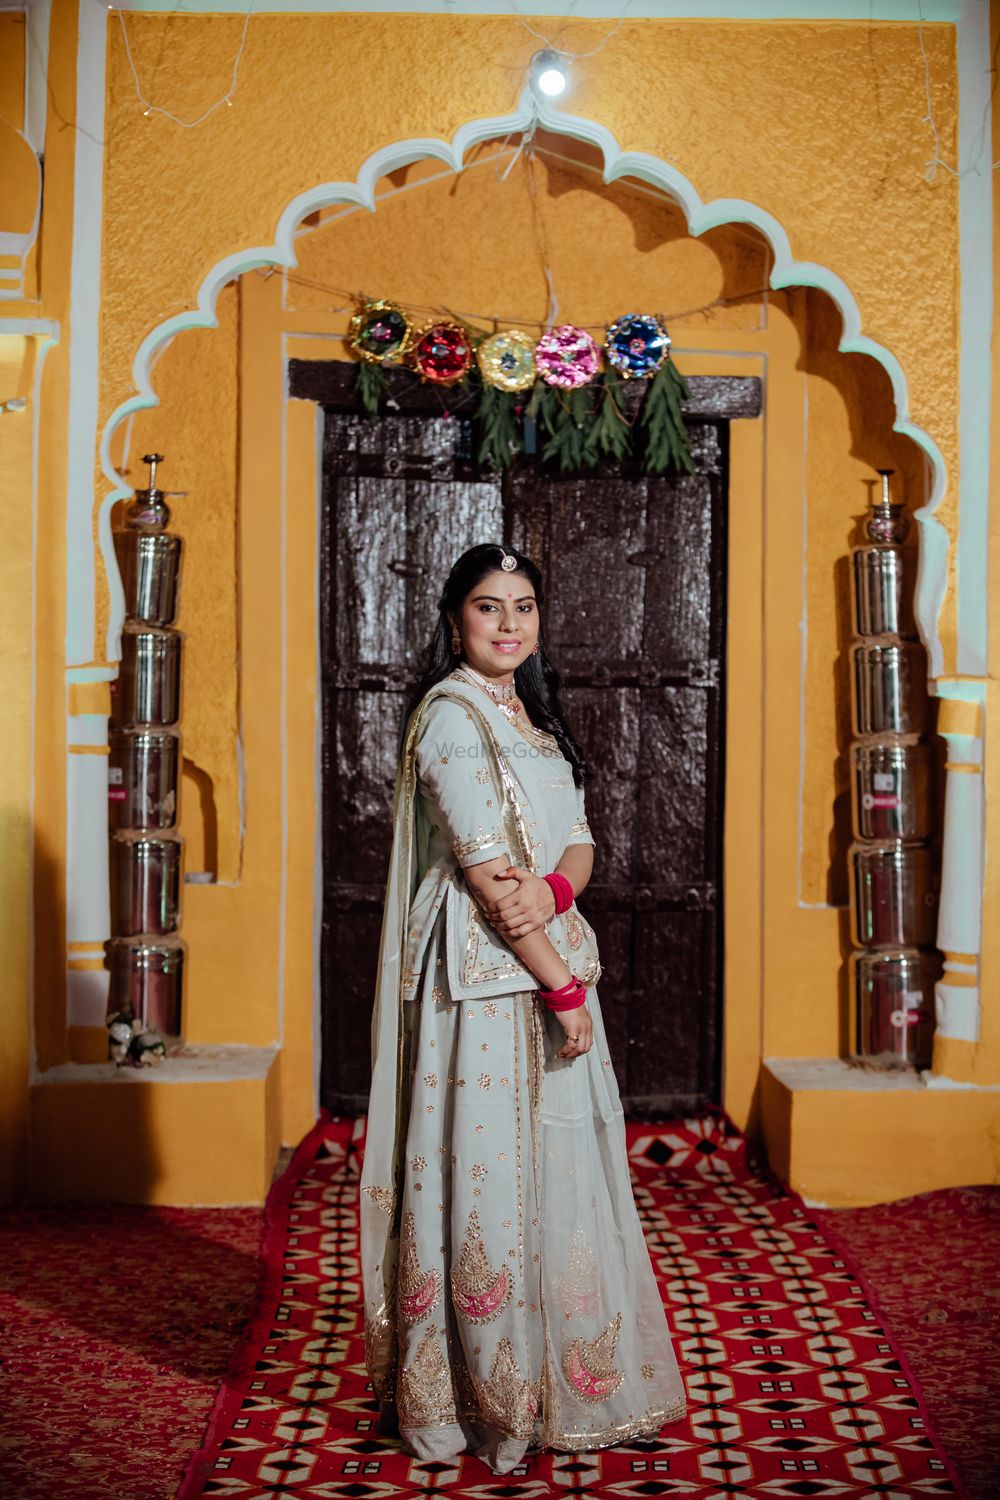 Photo From Deepshikha & Abhishek - By The Delhi Wedding Company